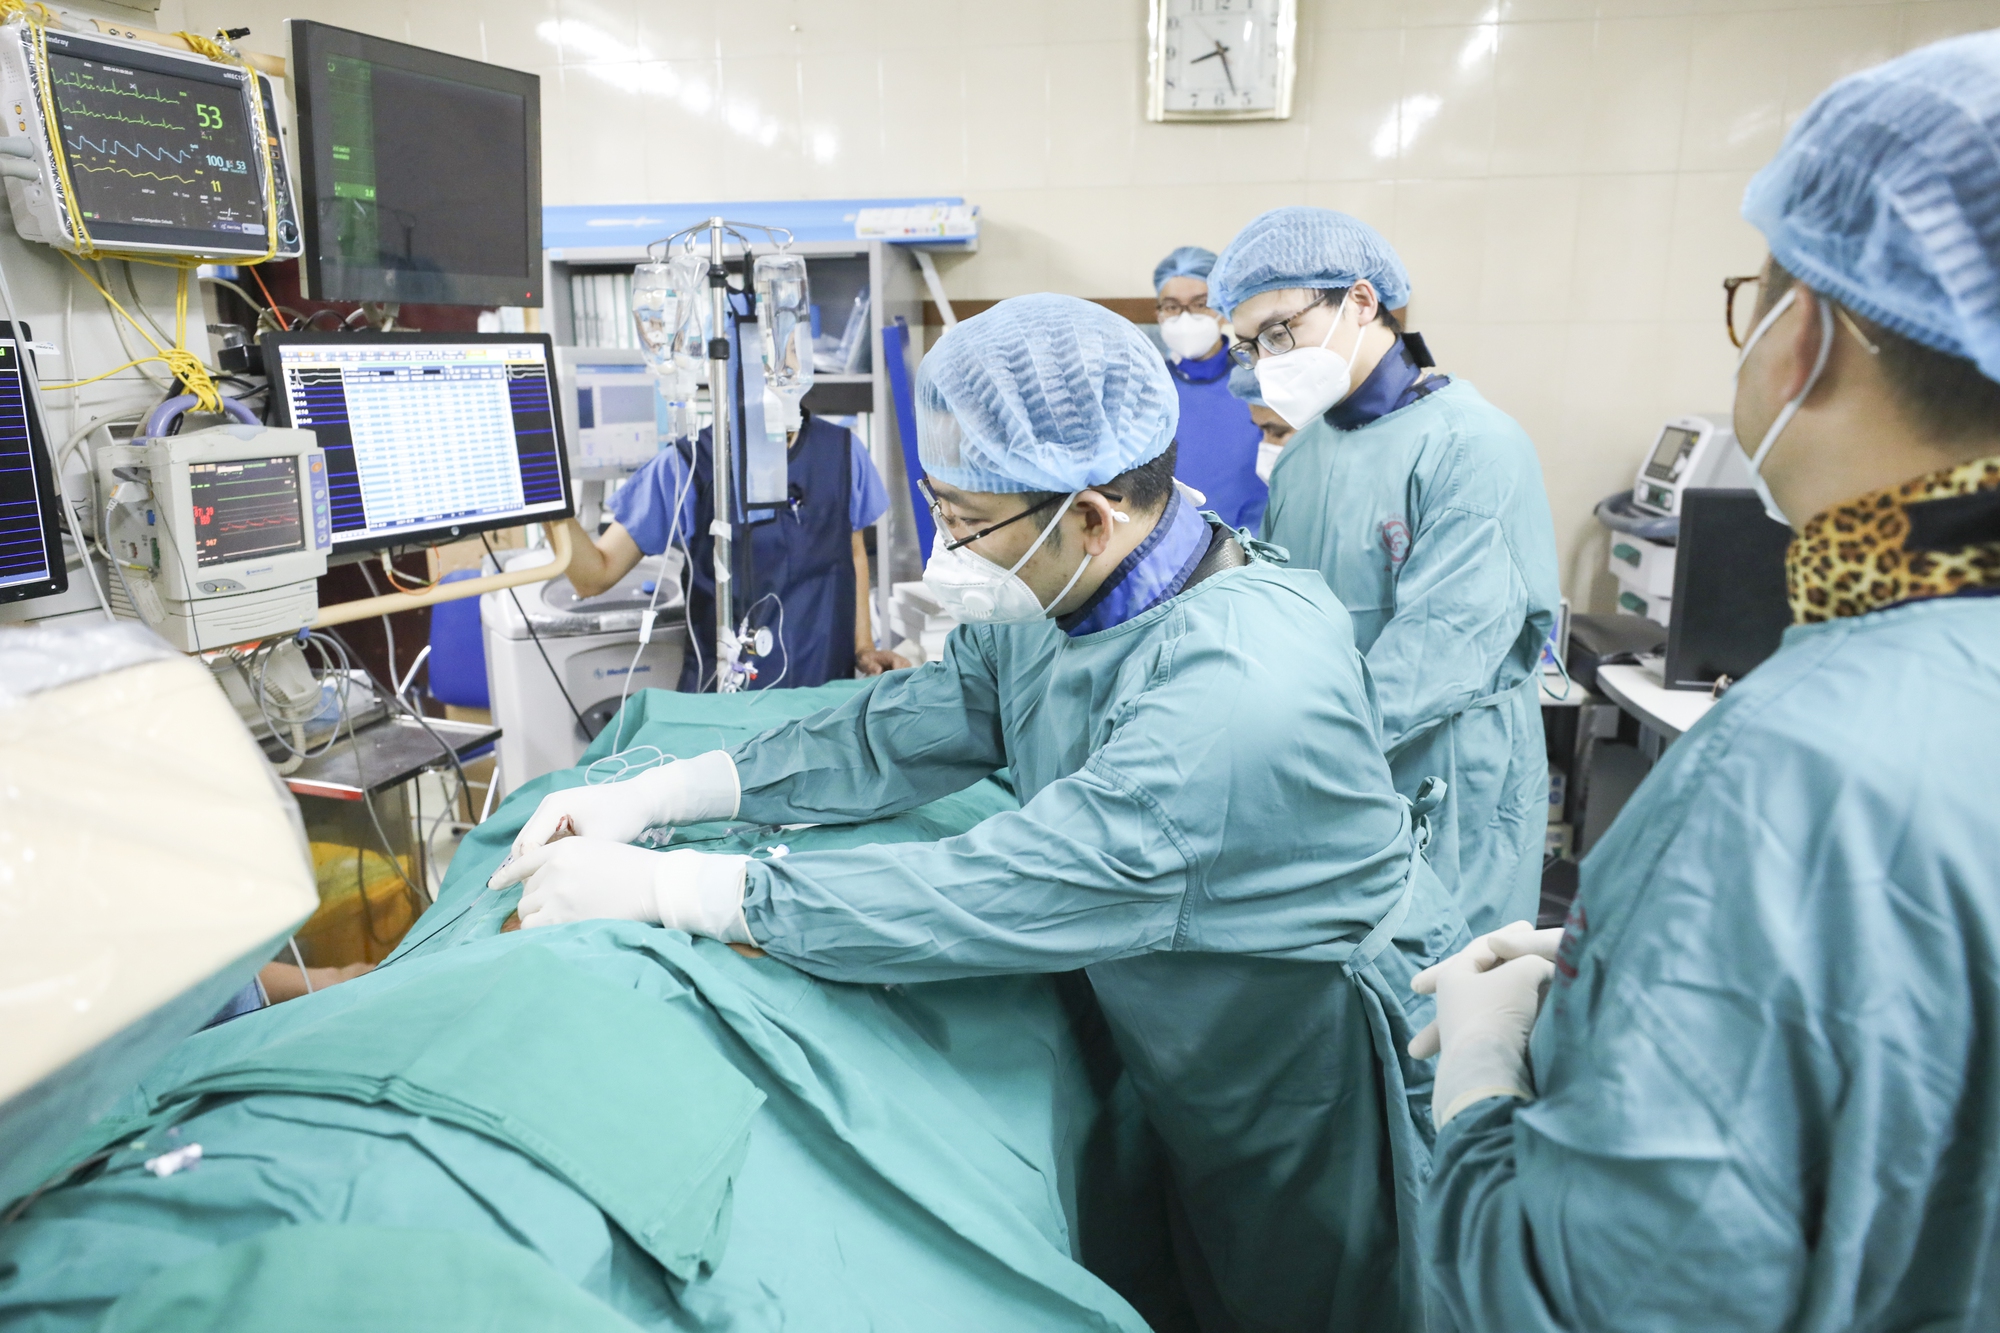 Trung tâm tim mạch đầu tiên của Việt Nam làm chủ kĩ thuật mới điều trị rối loạn nhịp tim phức tạp - Ảnh 1.